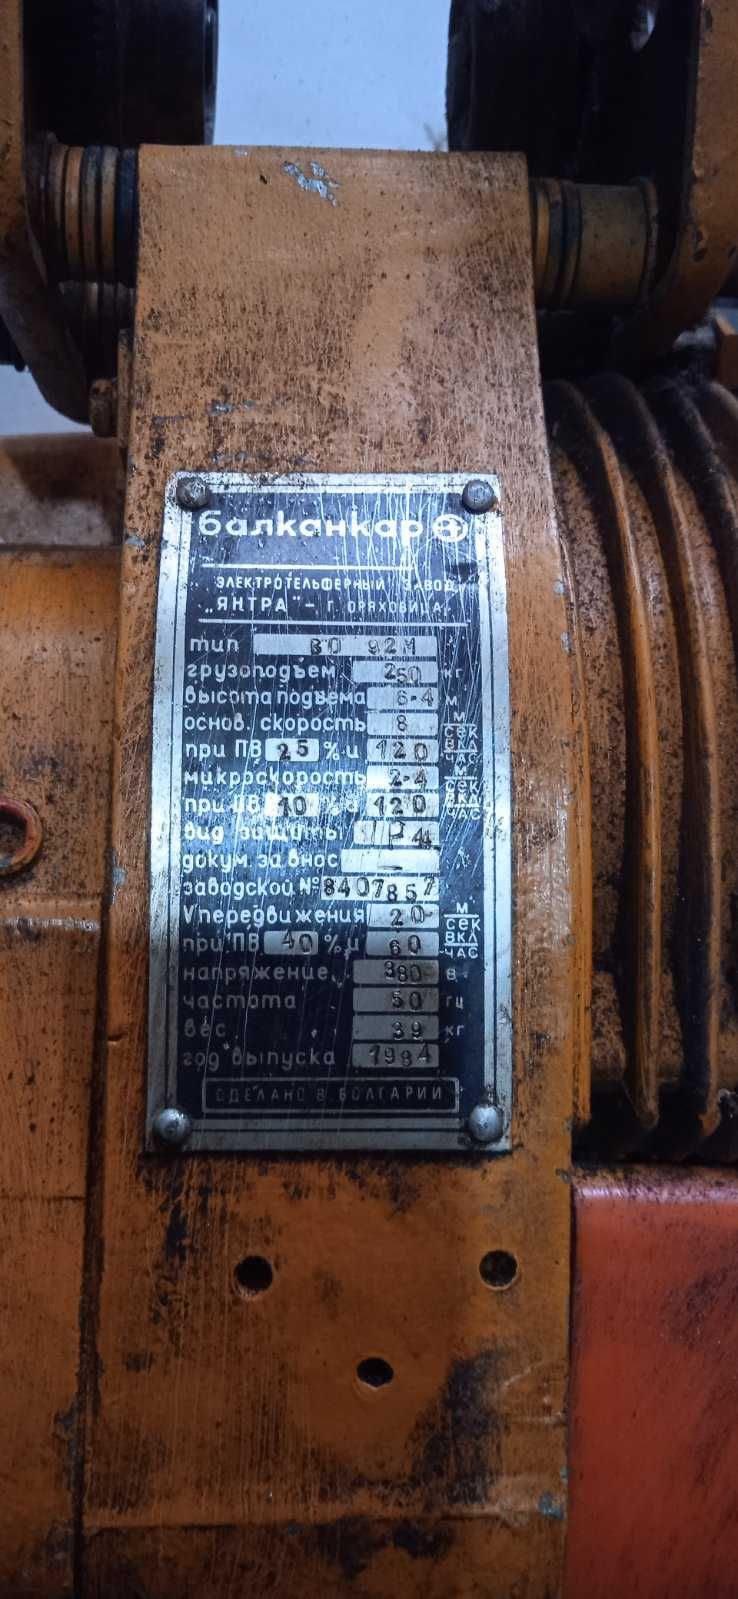 Тельфер  електричний  Болгарія.0,25 тони та 2 тони /цепний 5 тон